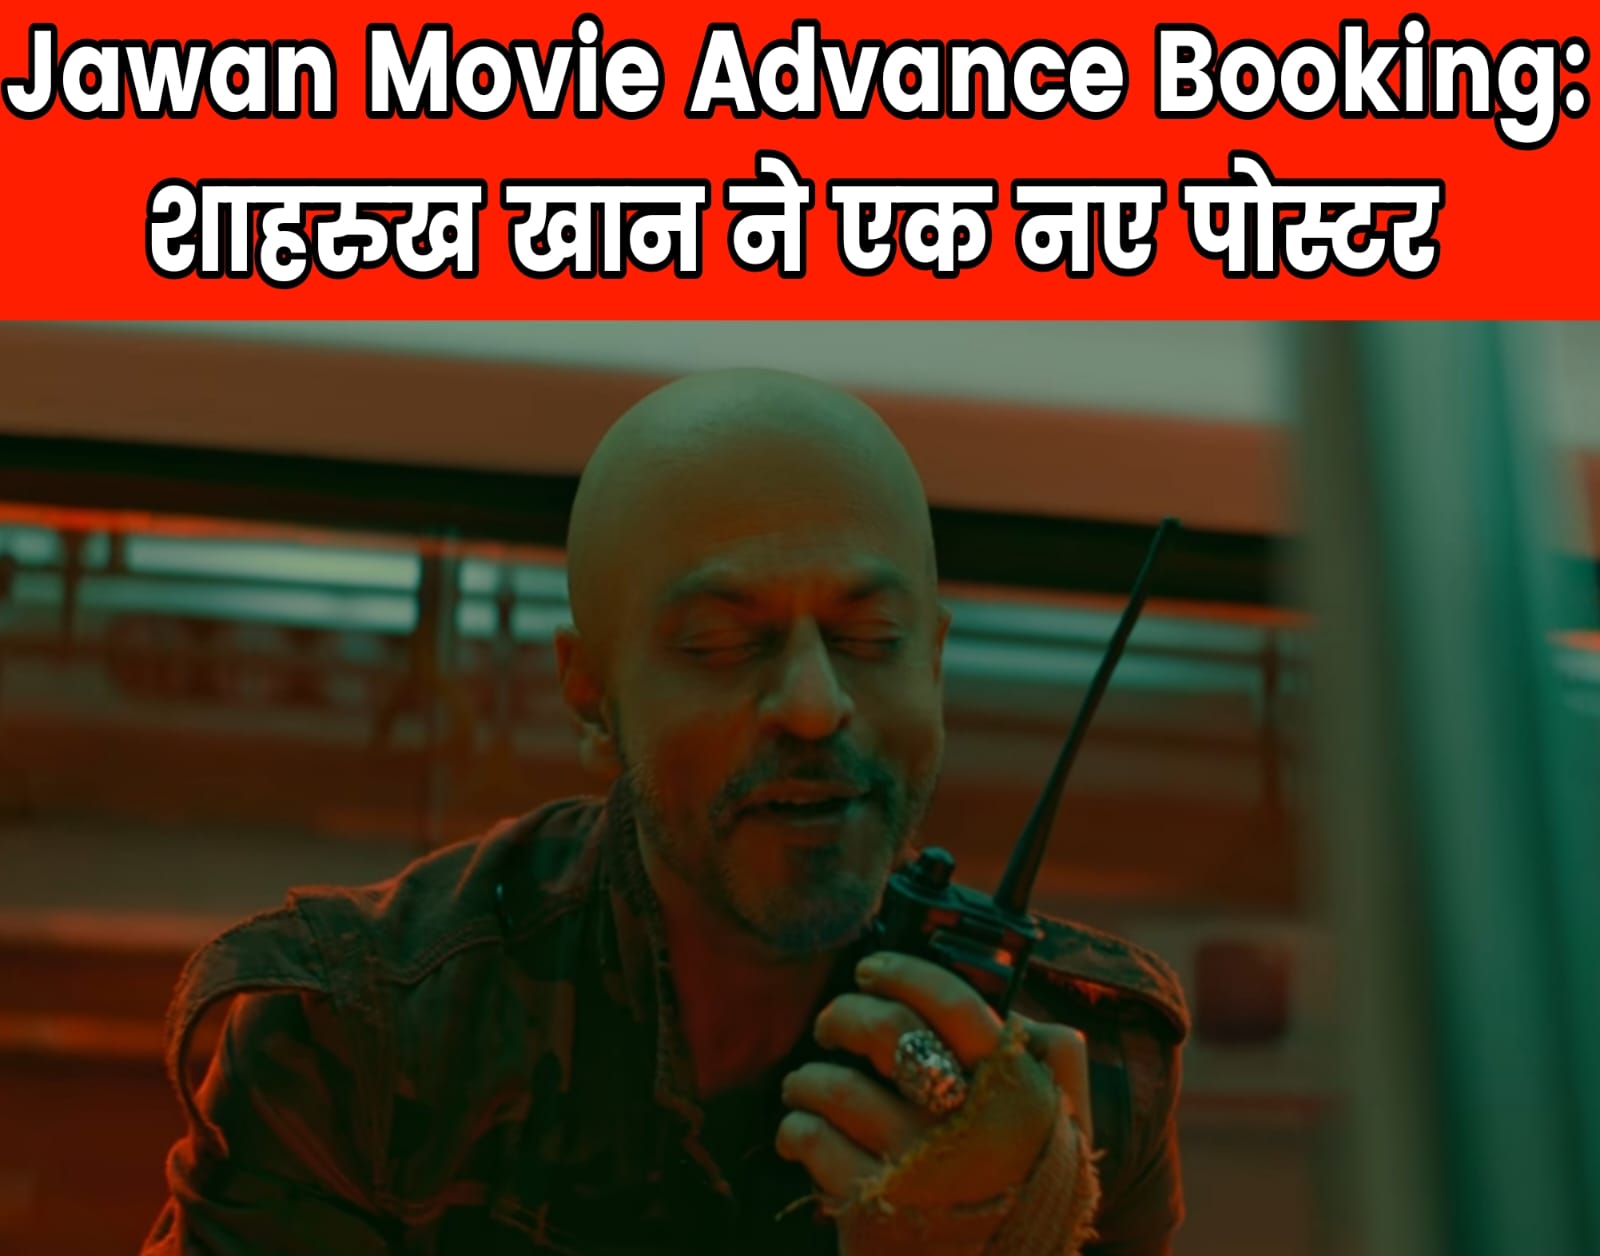 Jawan Movie Advance Booking: शाहरुख खान ने एक नए पोस्टर के साथ प्रशंसकों को याद दिलाया